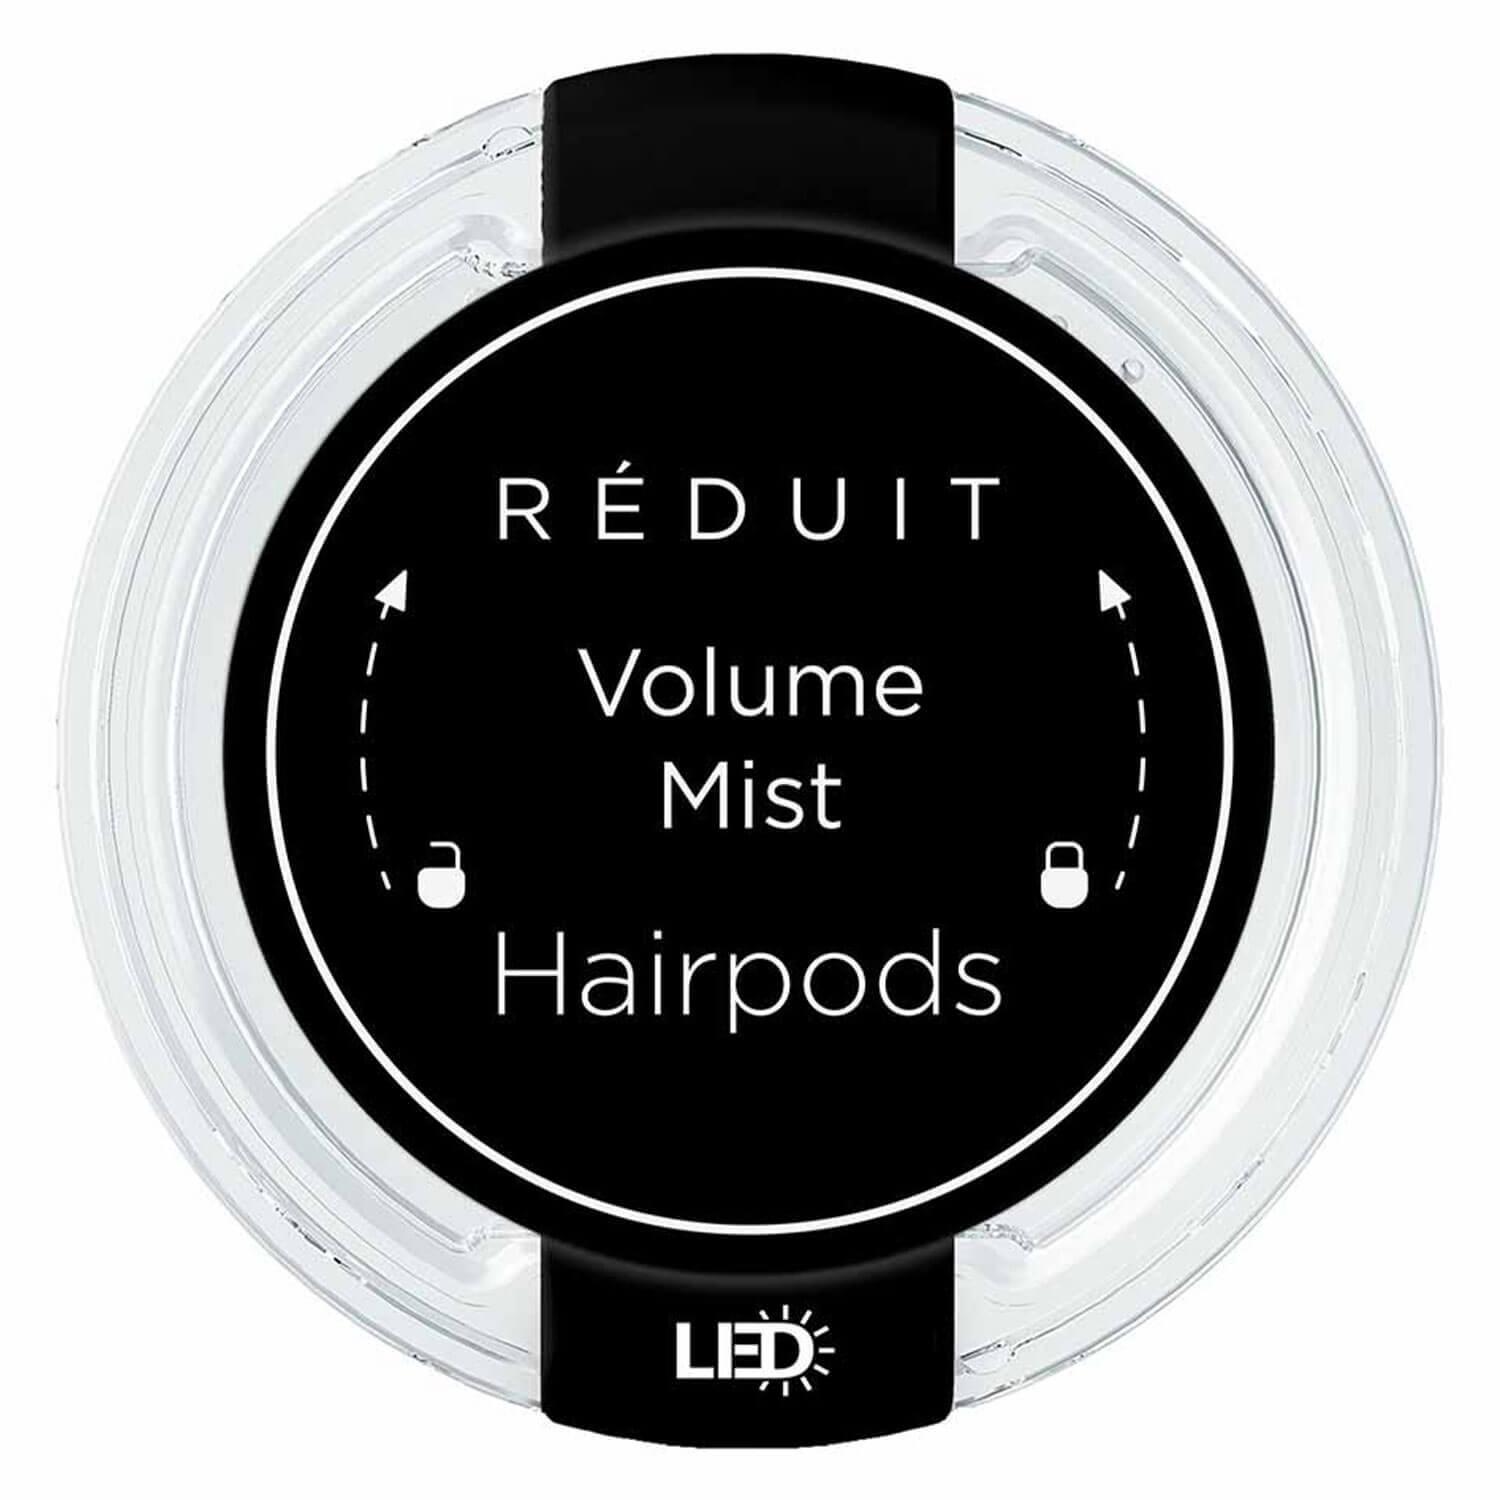 RÉDUIT - Volume Mist Hairpods LED